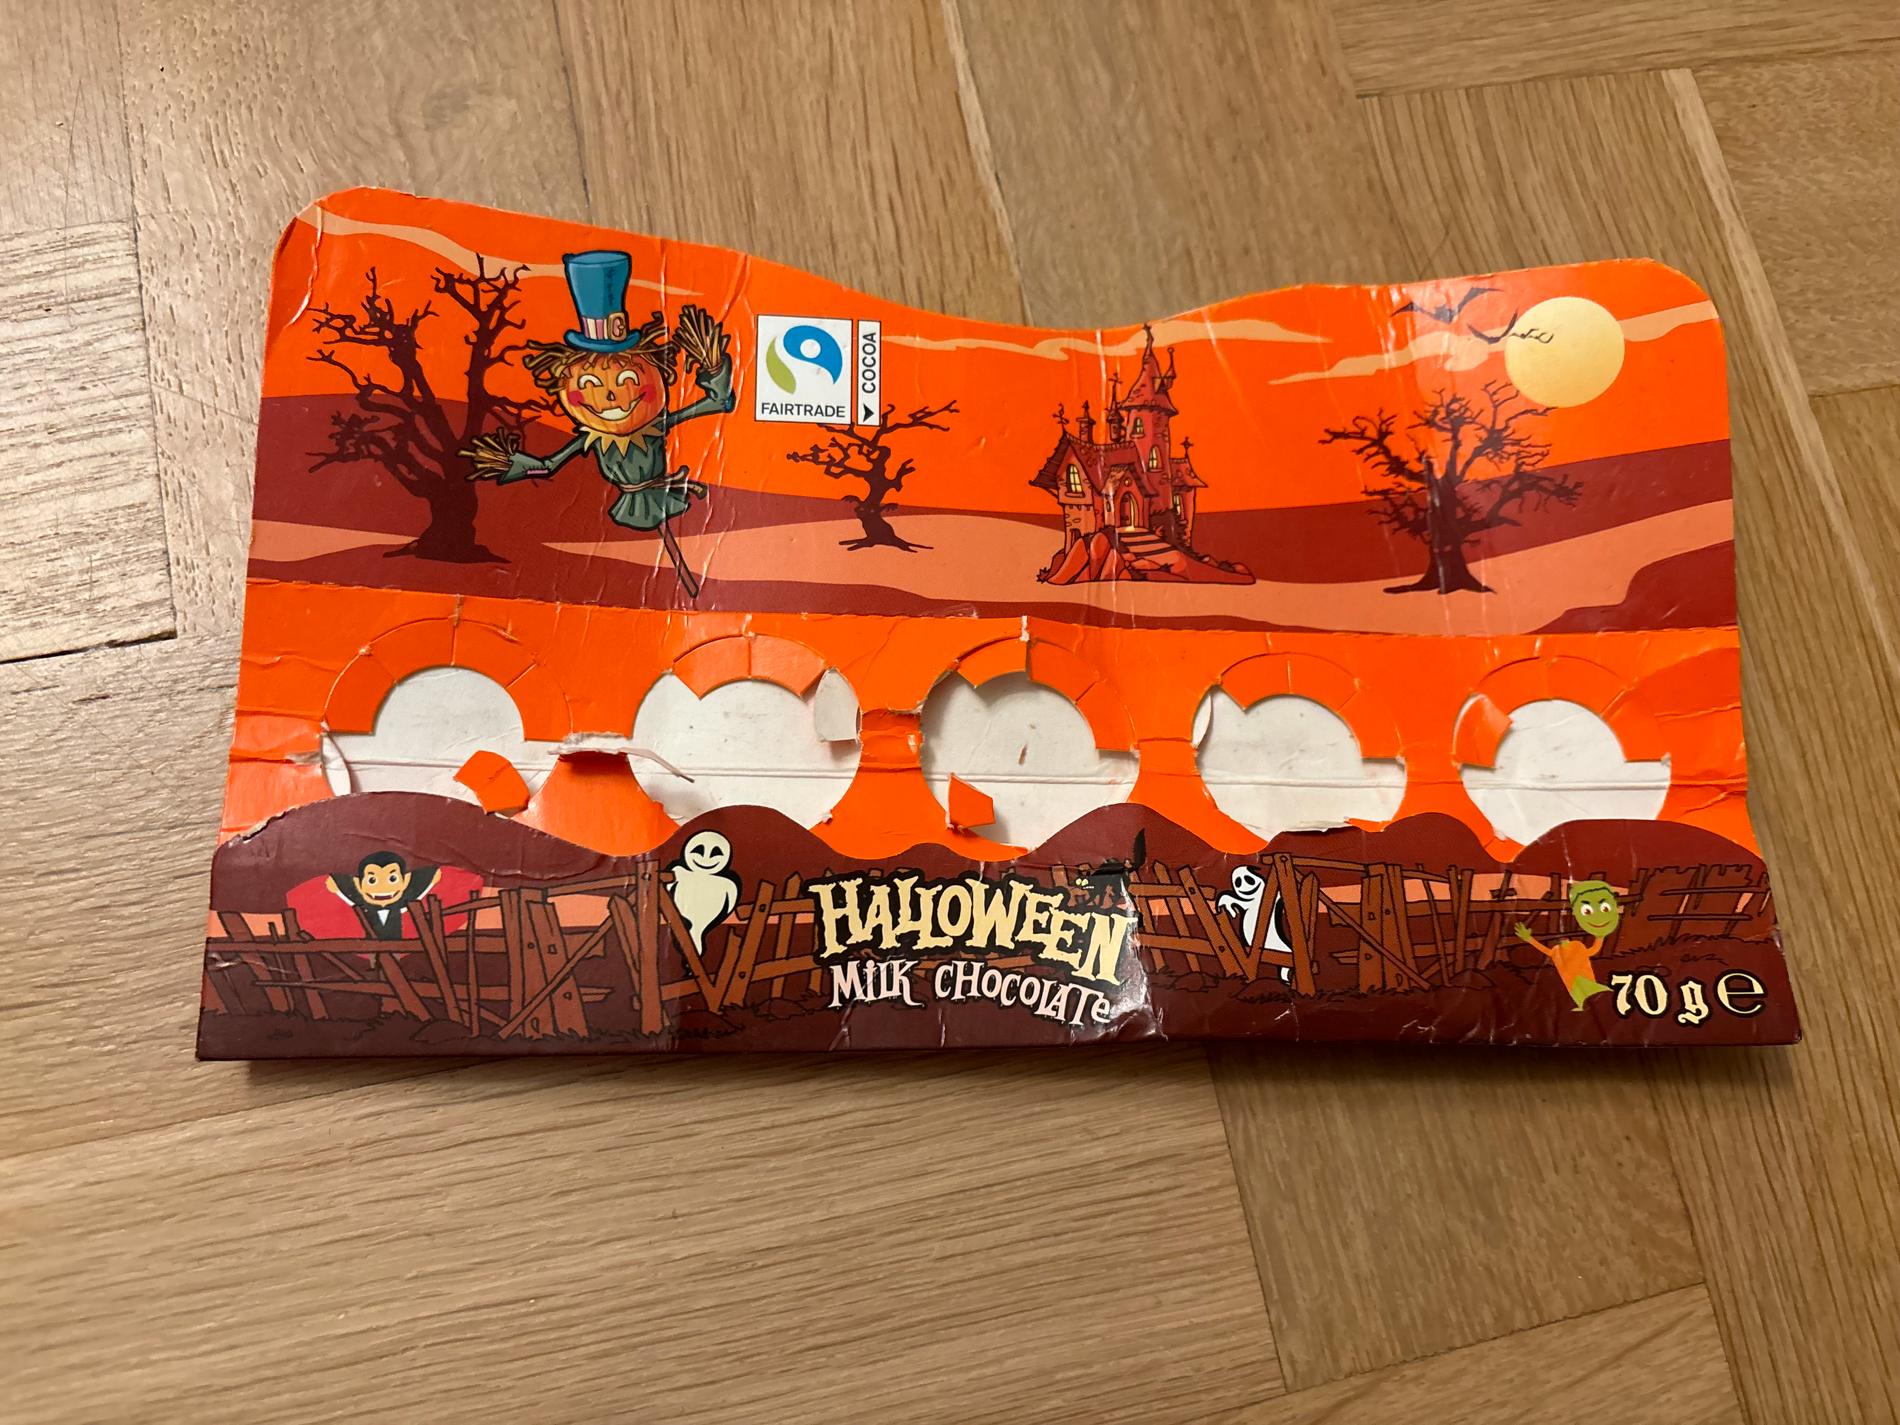 Fem chokladgubbar var uppätna när paketet kom fram.